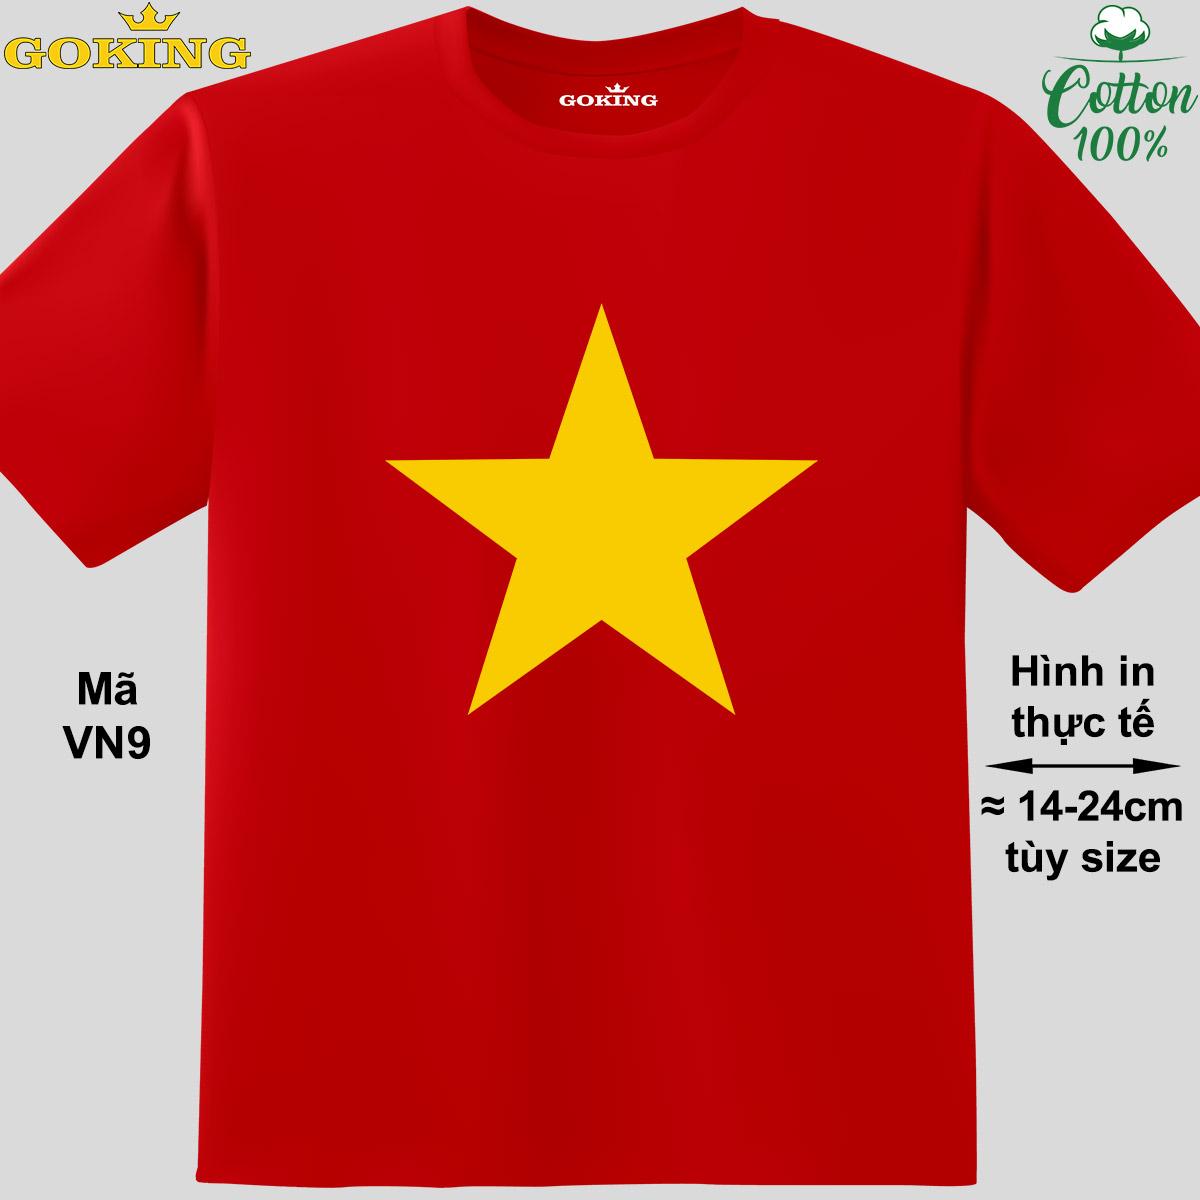 Áo thun lá cờ Việt Nam, mã VN9. Hãy tỏa sáng như kim cương, qua chiếc áo phông Goking siêu hot cho nam nữ trẻ em, ặp đôi, gia đình, đội nhóm